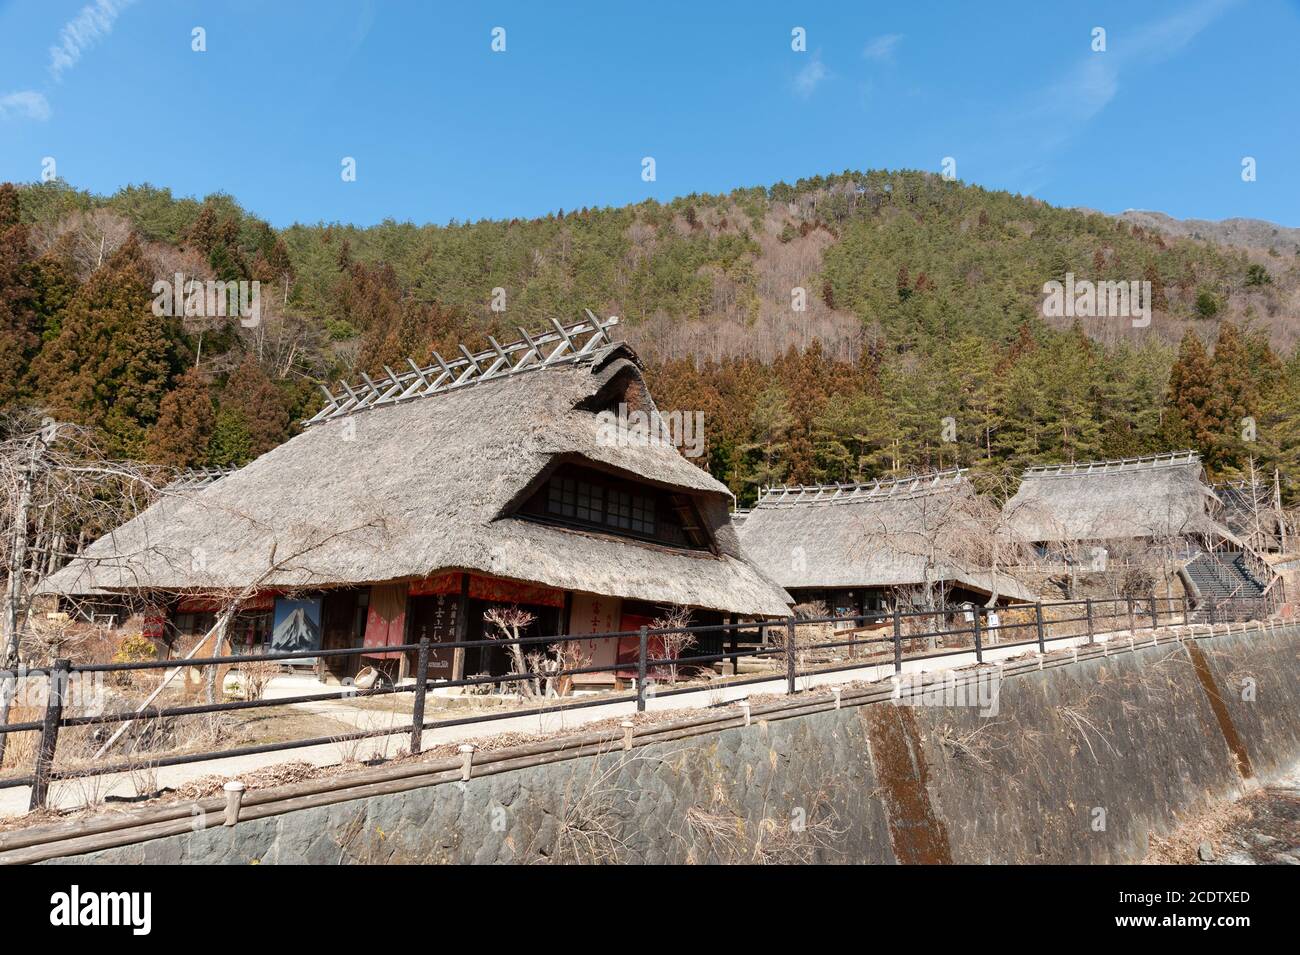 Reetdachhäuser im alten japanischen Dorf Saiko Iyashino-Sato Nenba (Heildorf). Das Hotel liegt am westlichen Ufer des Sai-Sees. Stockfoto